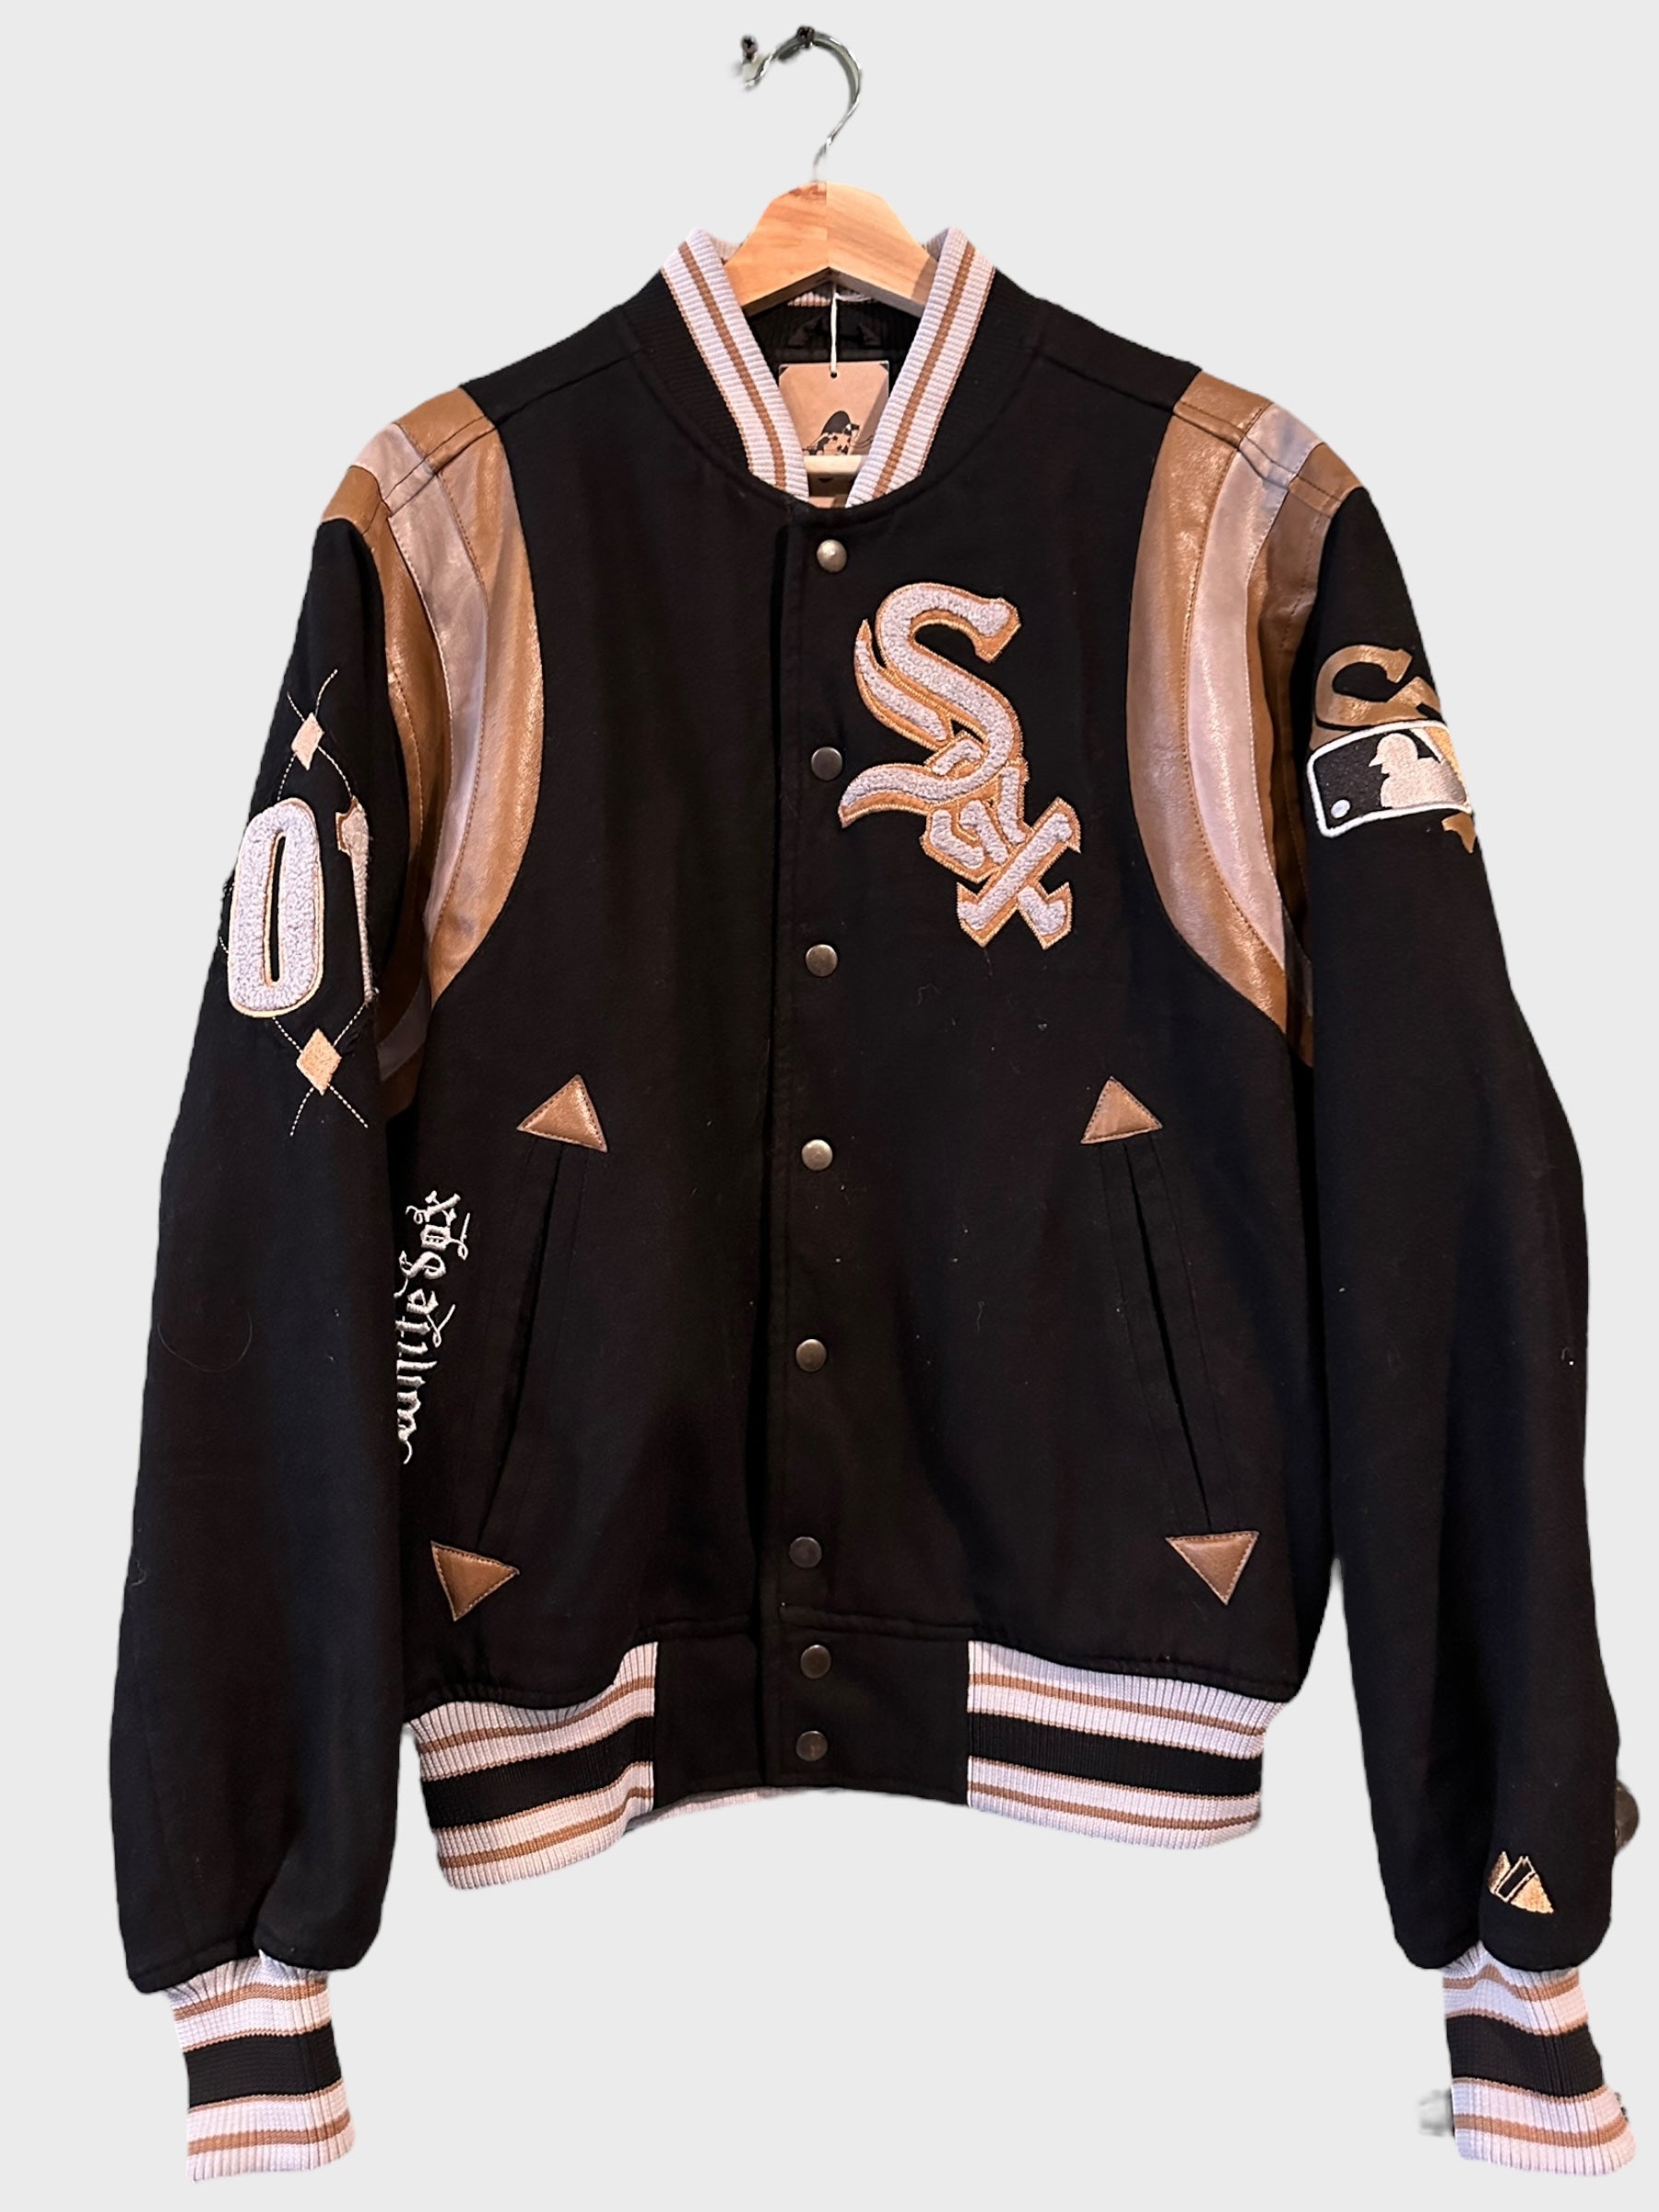 Chicago White Sox Baseball Jacket